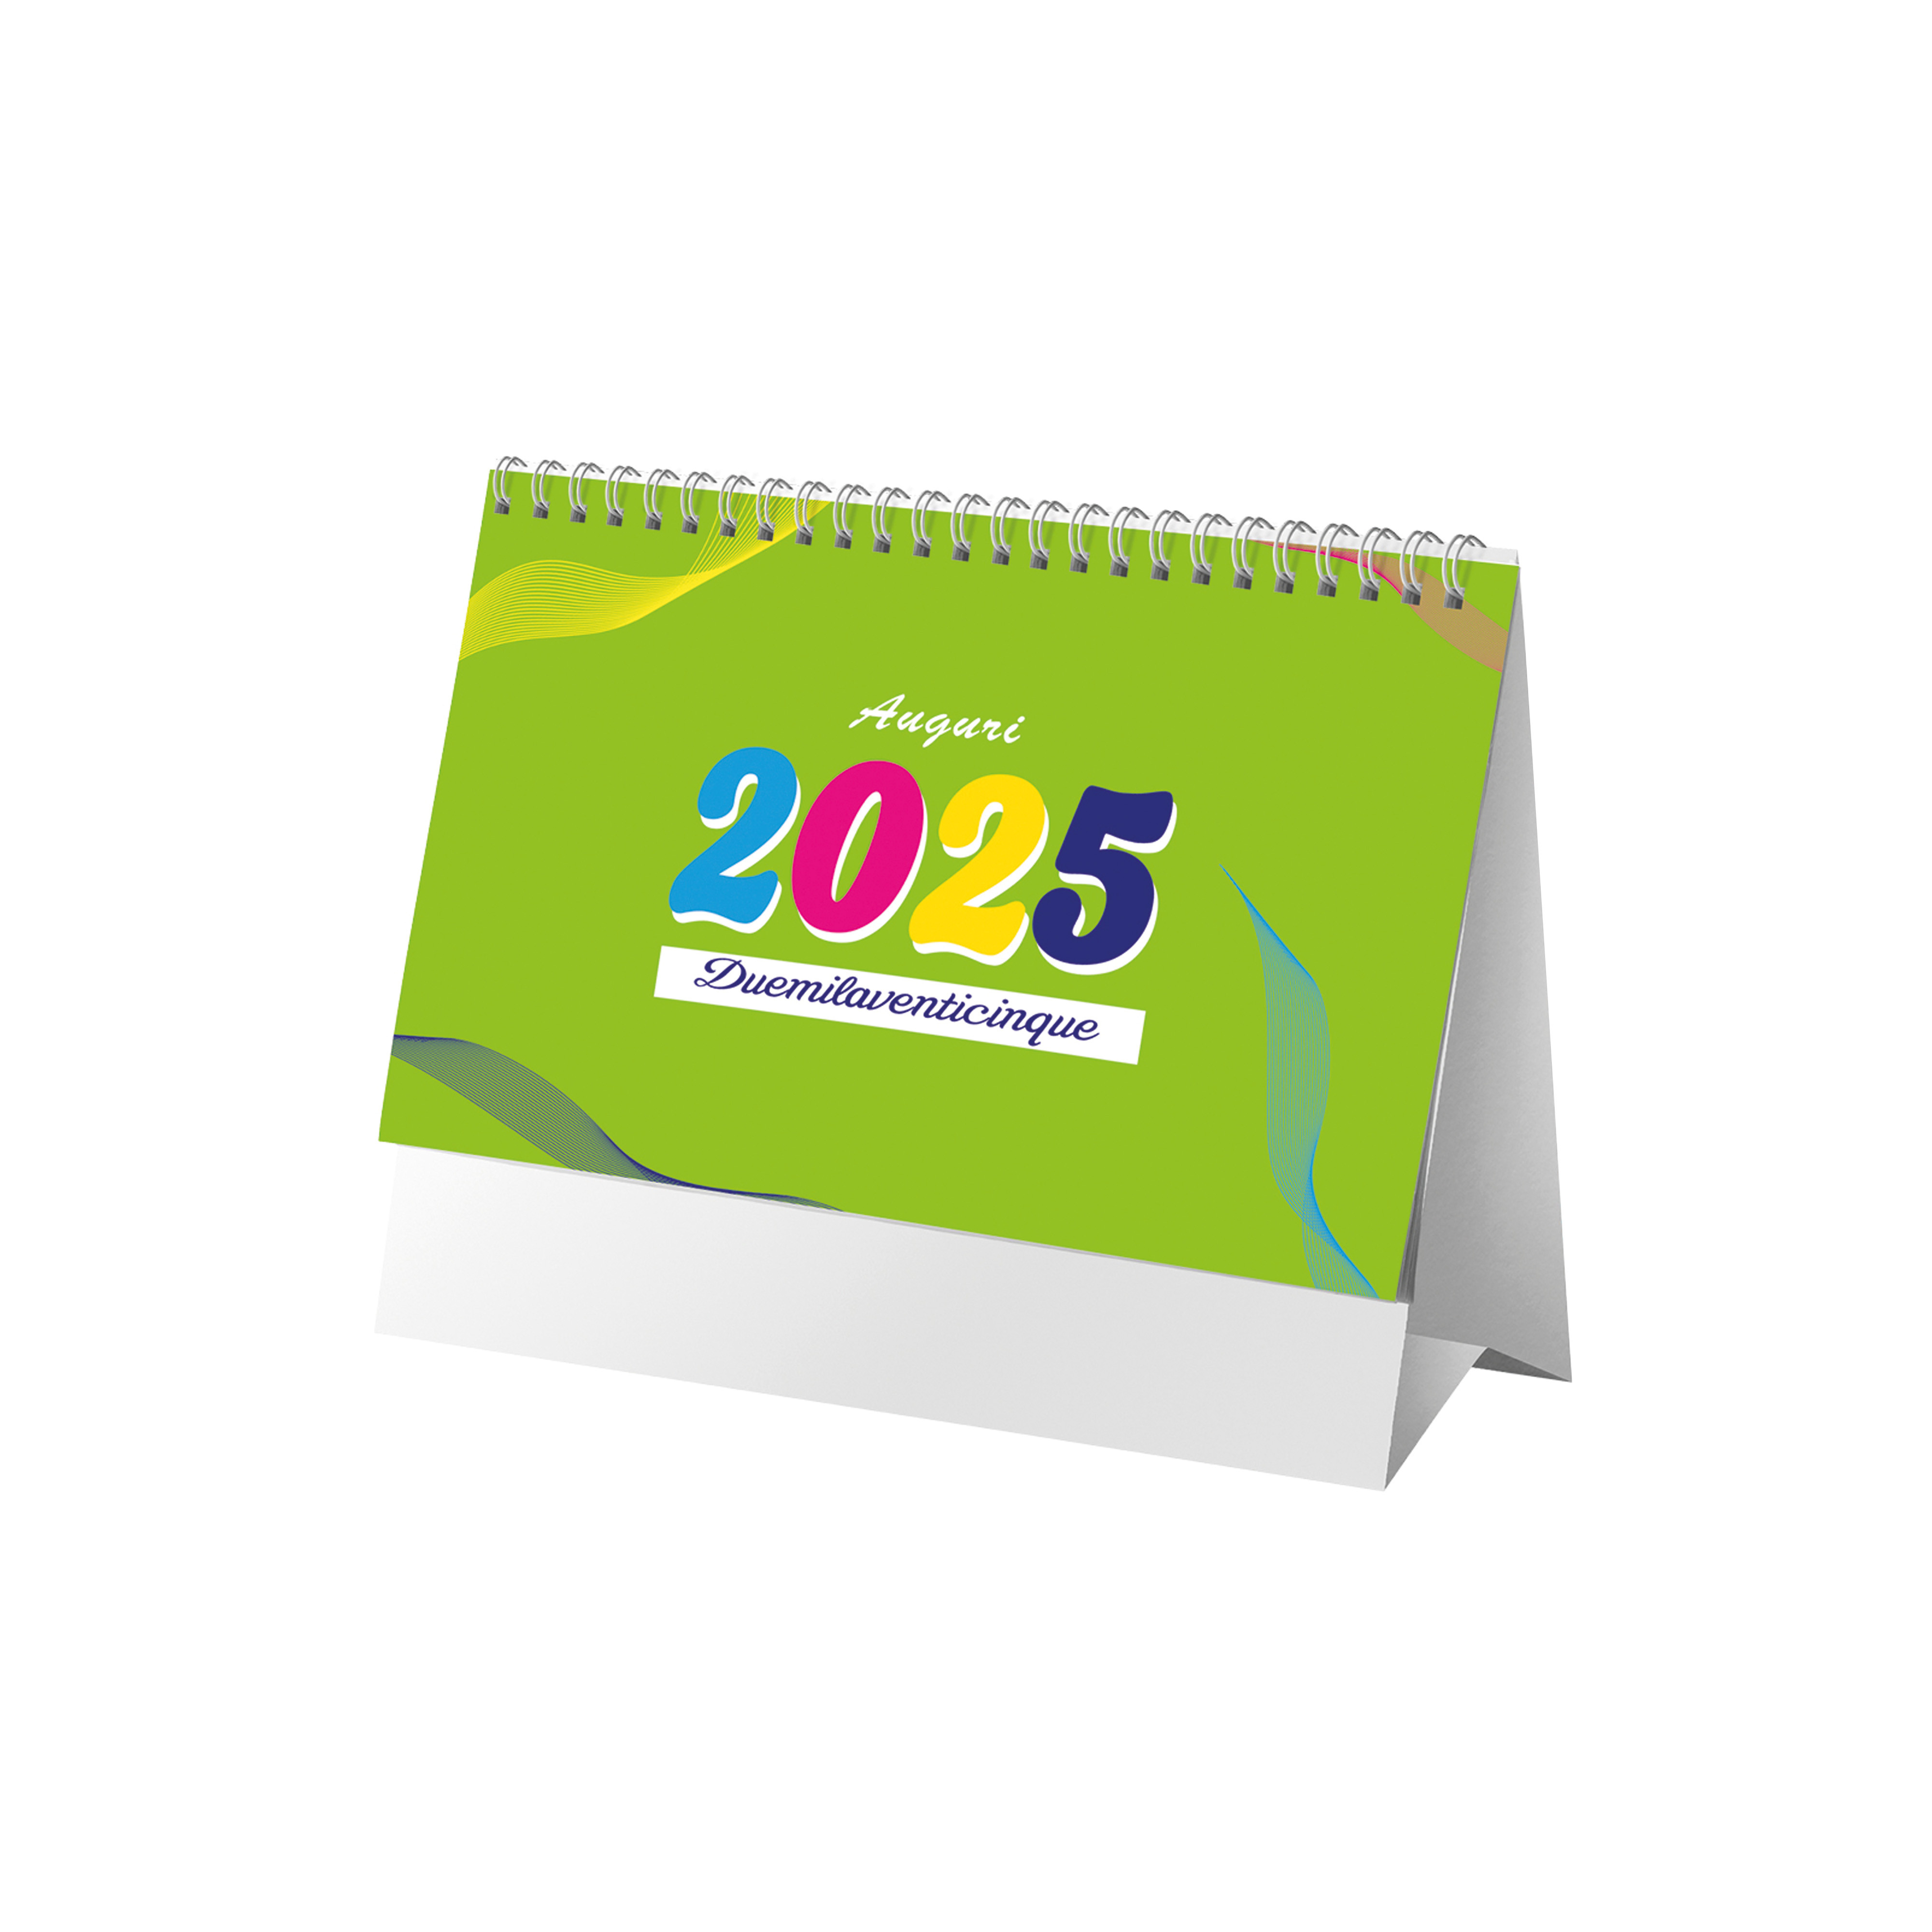 Calendario mensile 2025 da tavolo, 13 fogli su carta patinata opaca, 4 colori